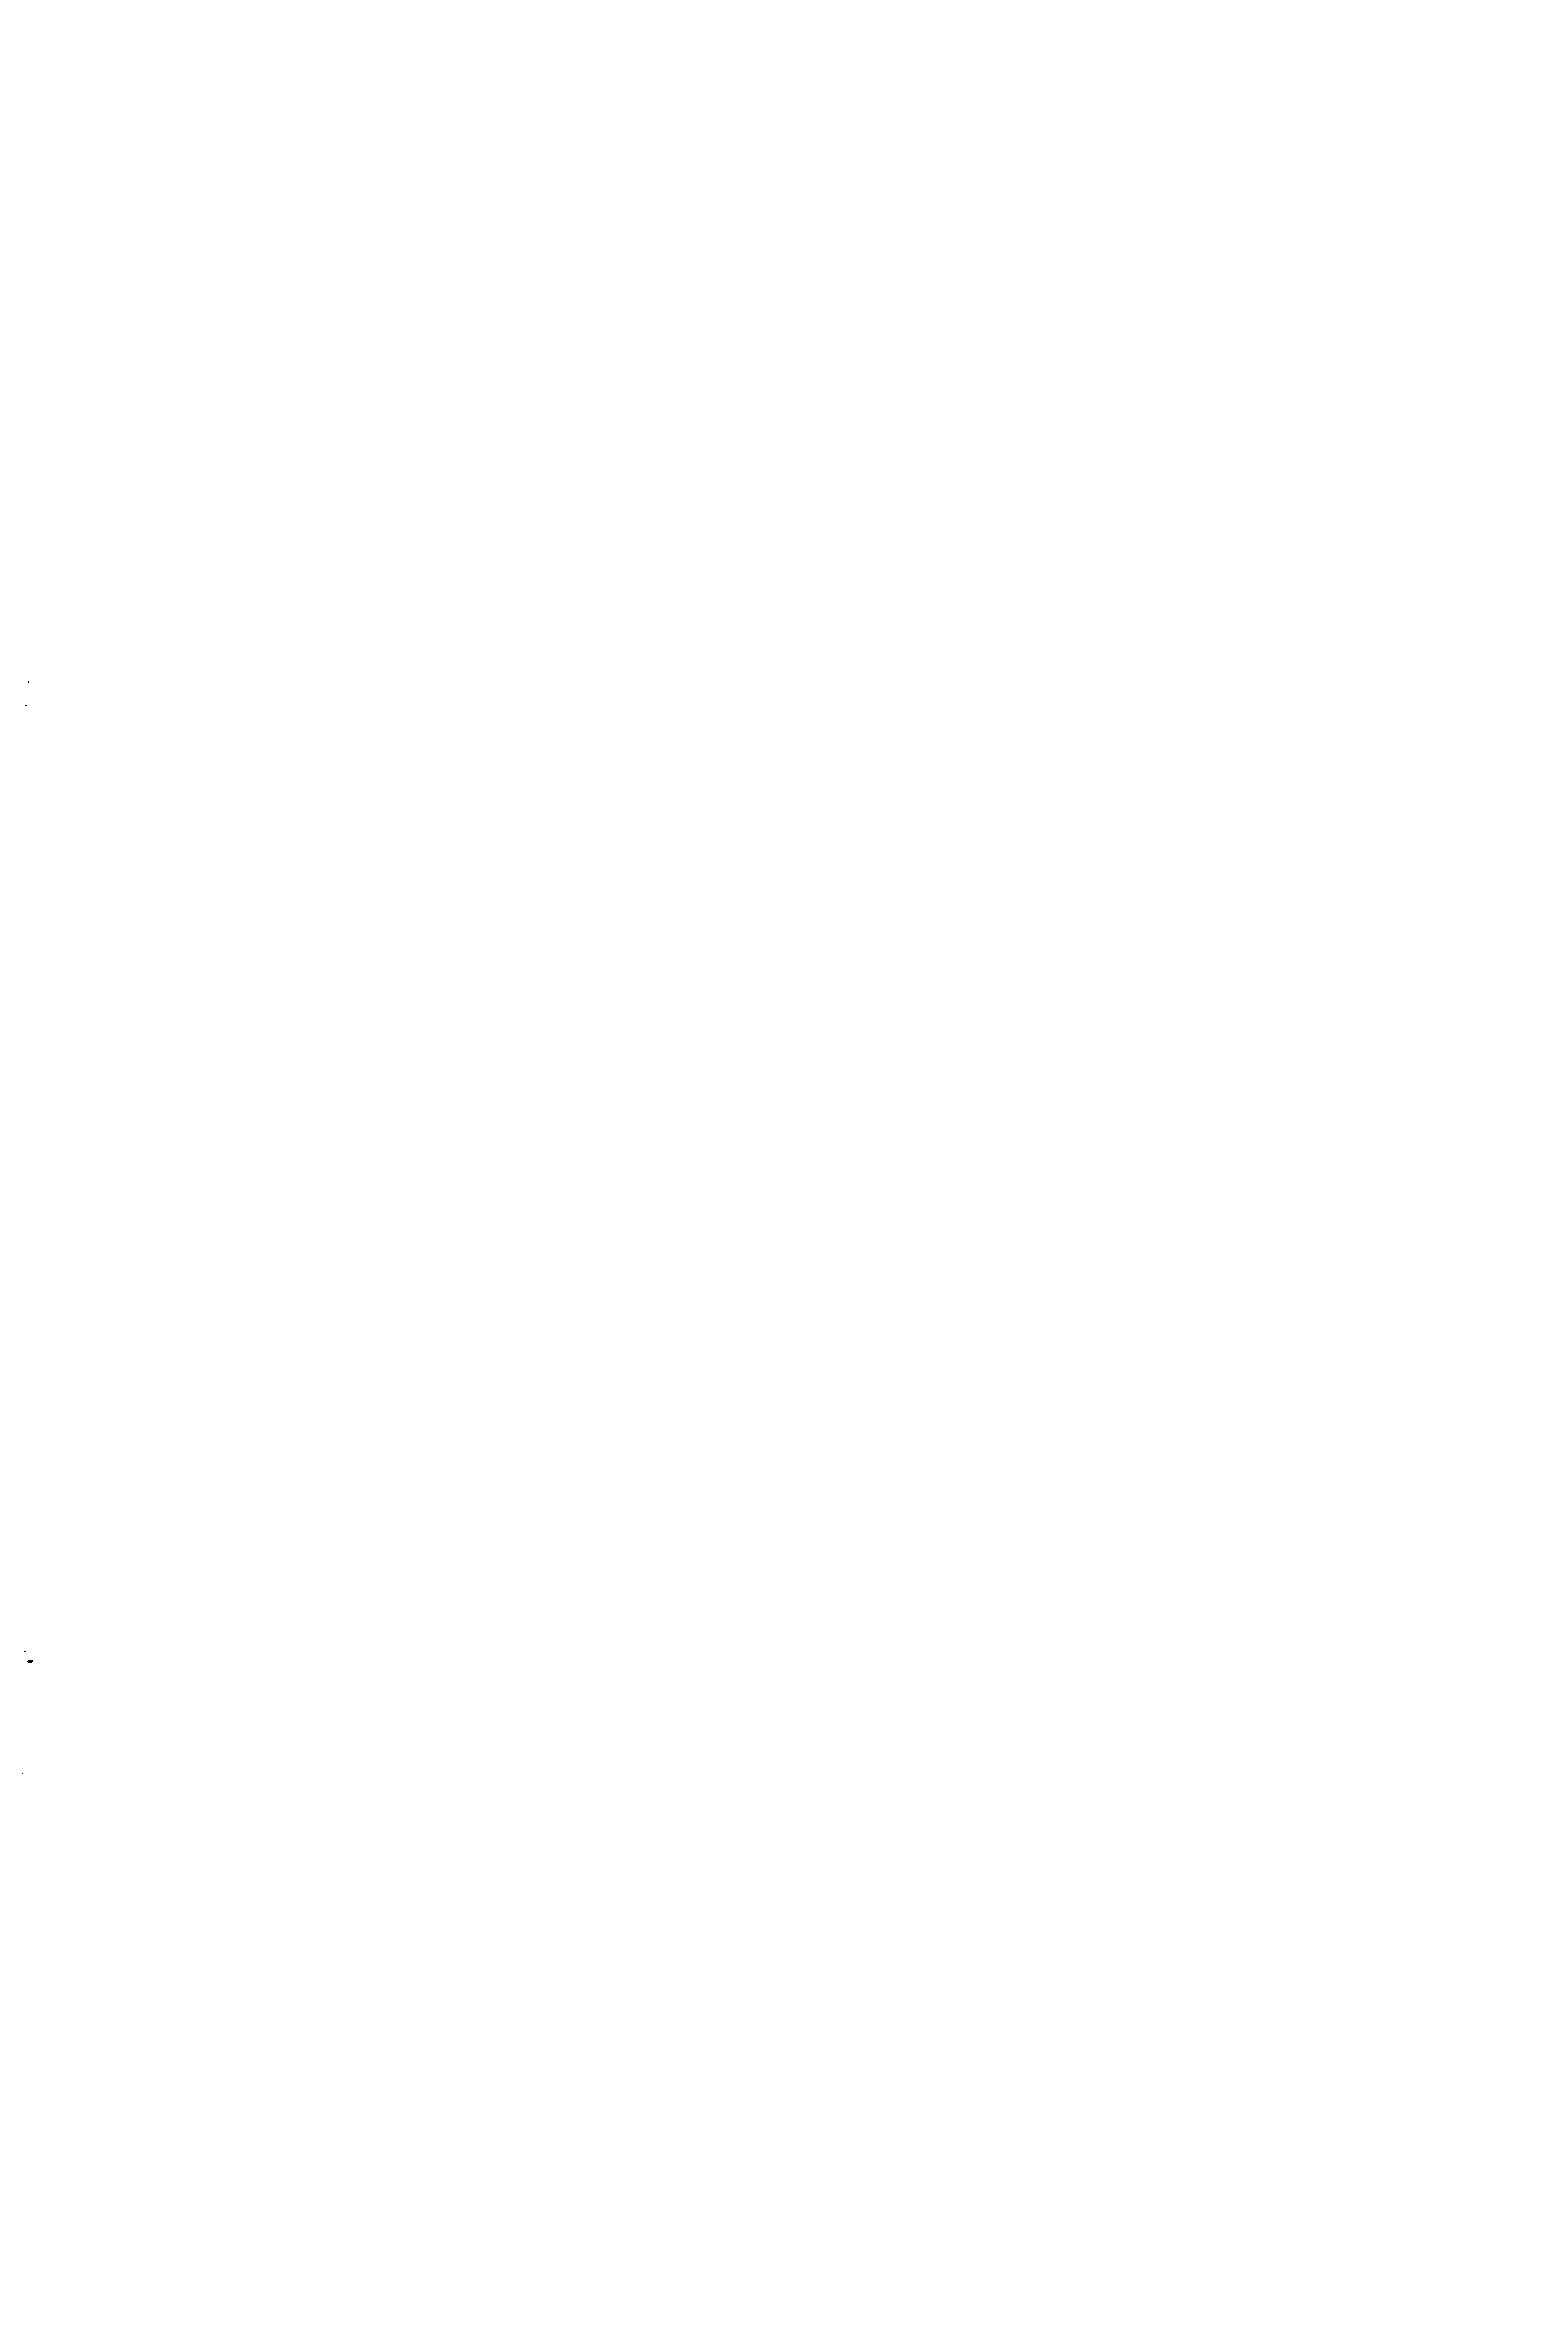 Рис. 17. Кривая коррозионного растрескивания латуни в аммиаке (полное погружение) 
